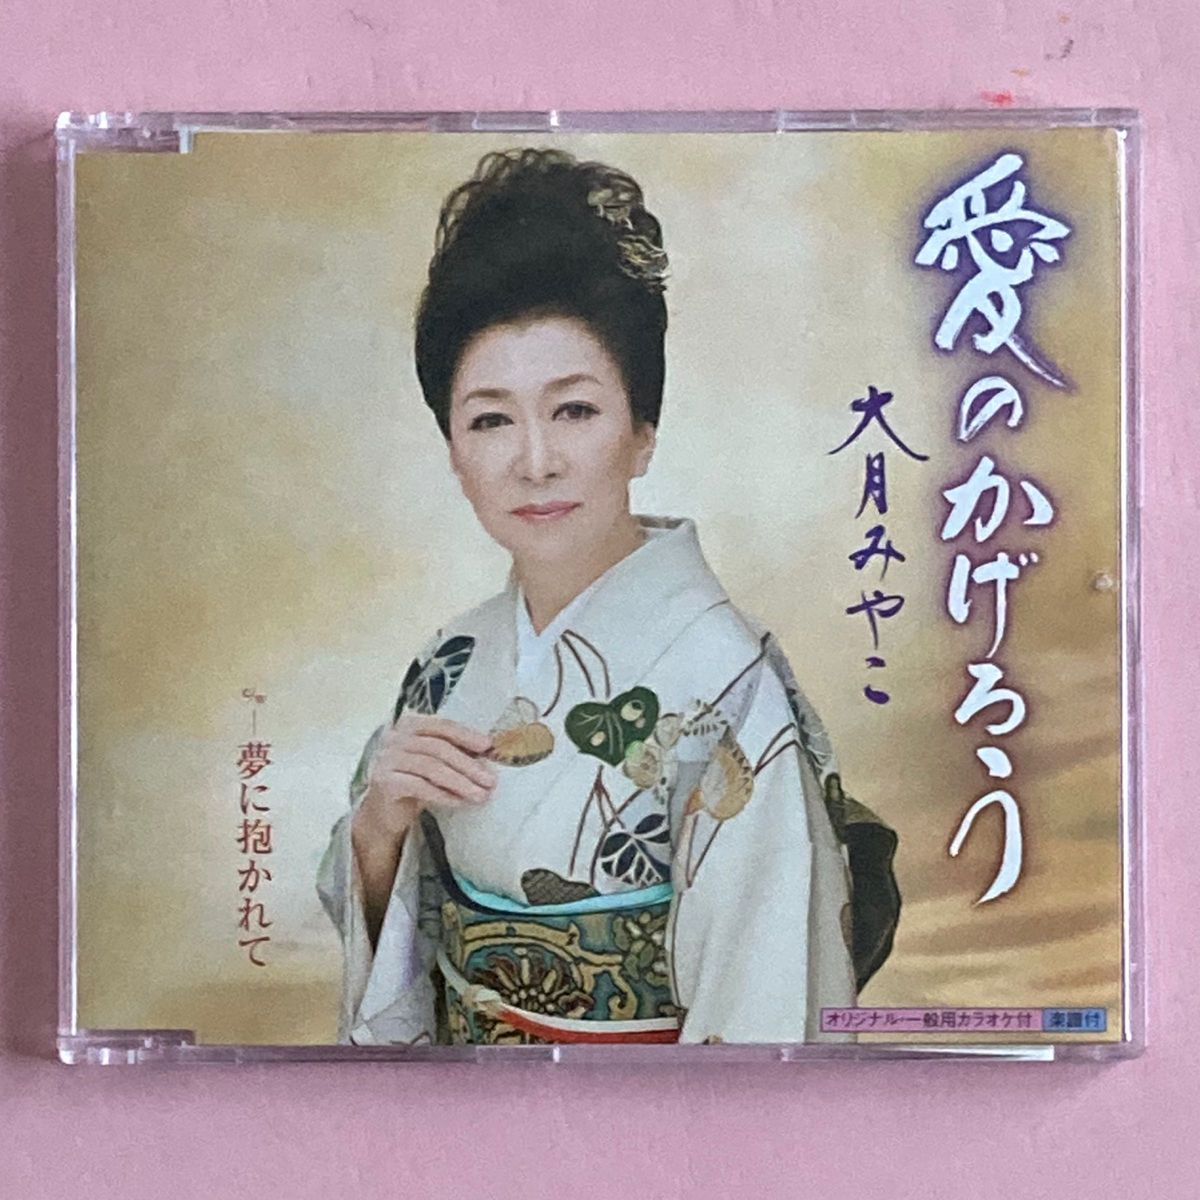 ☆ 大月みやこ『愛のかげろう・乱れ雪』 CD シングル